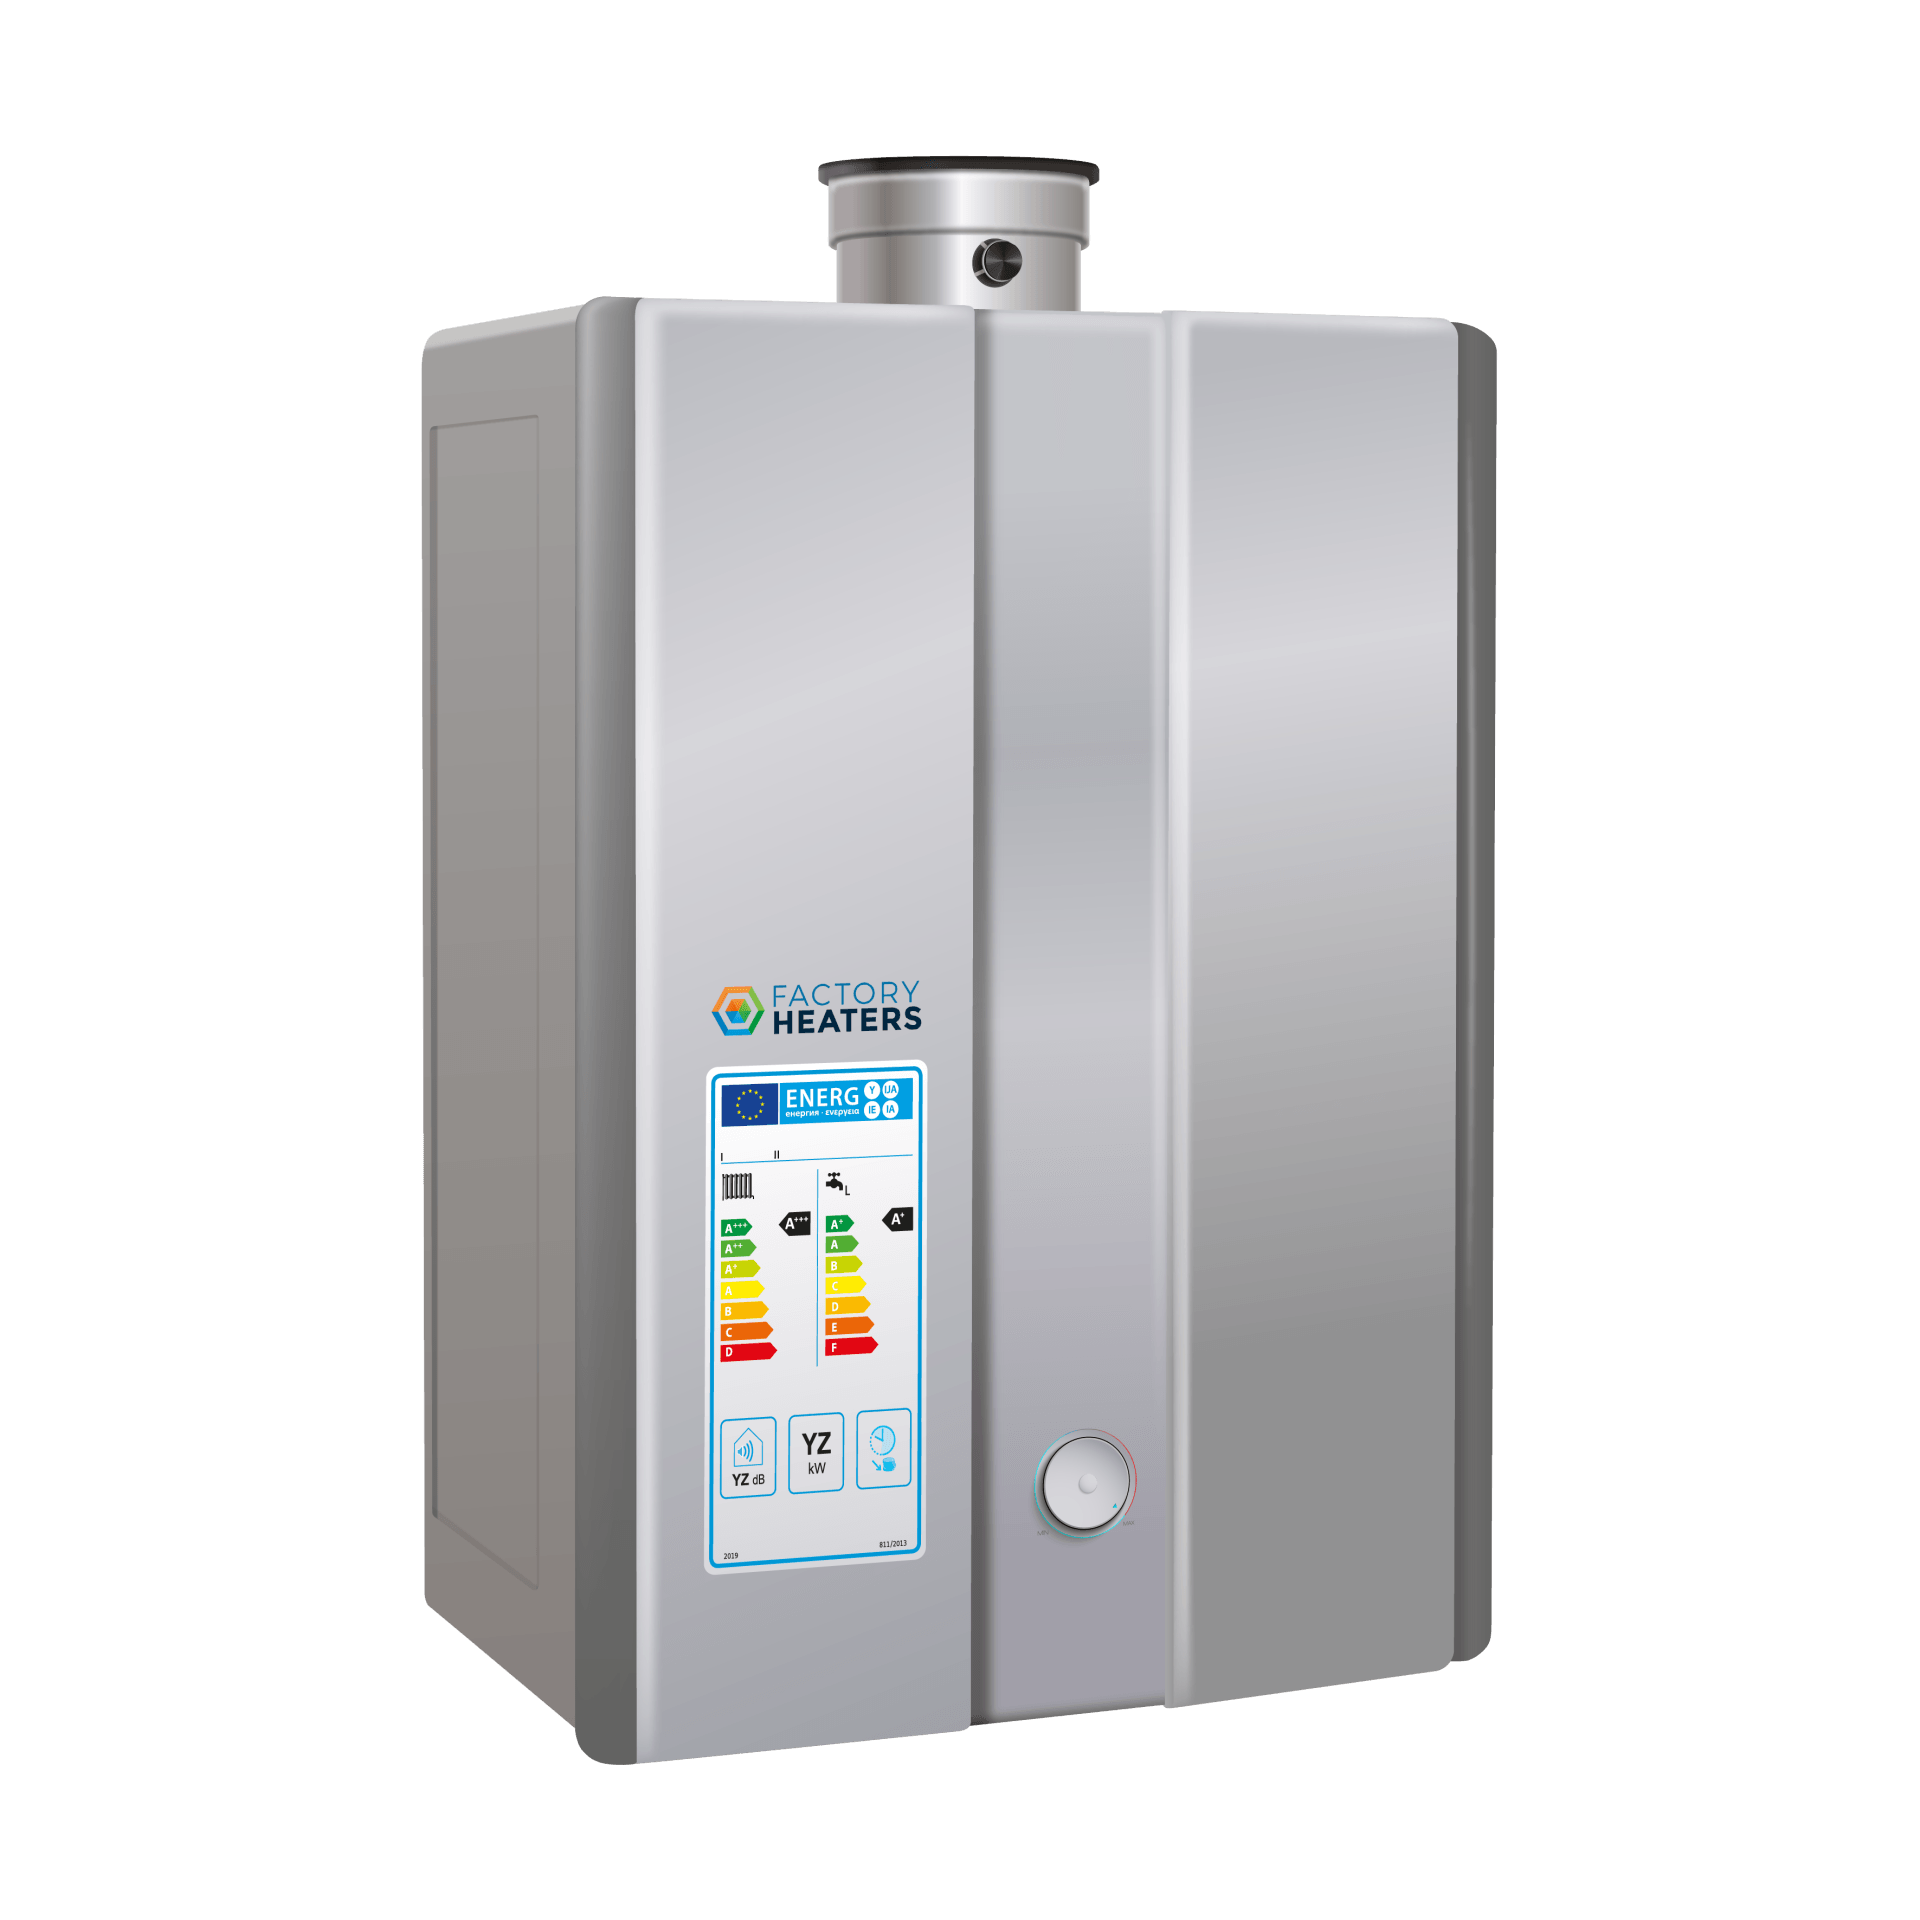 Rinnai water heater